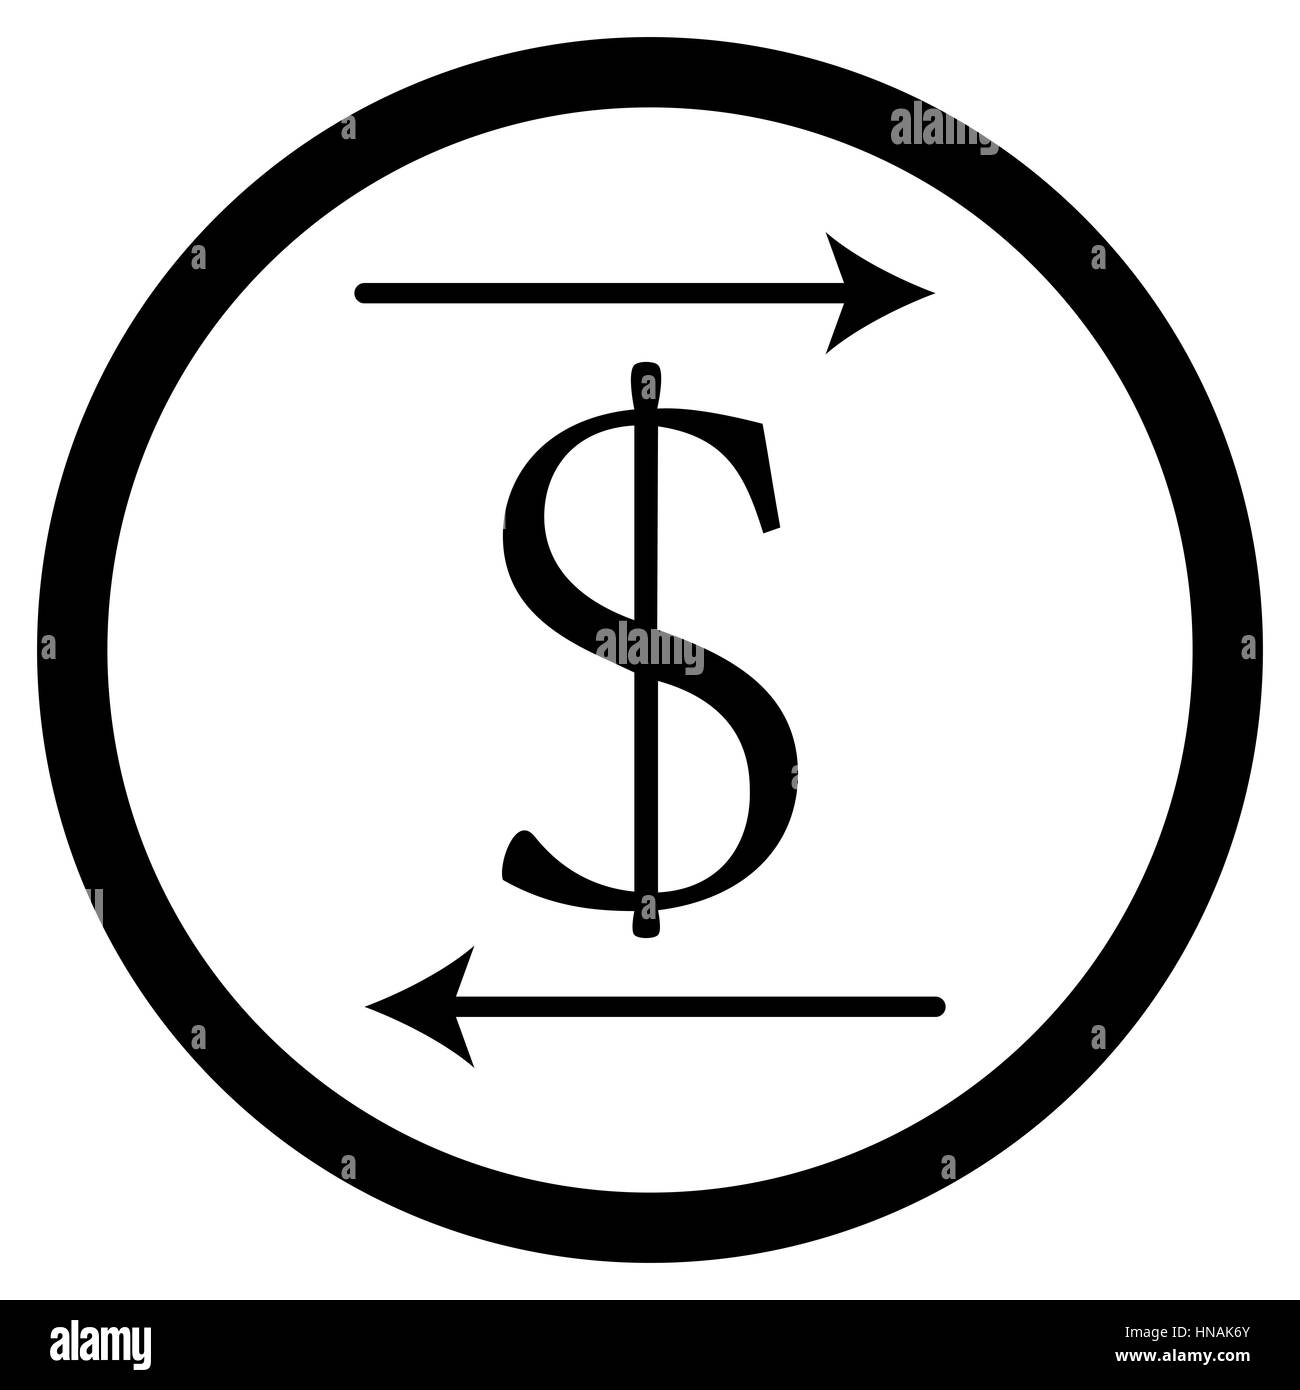 Überweisen Sie Geld-Symbol. Web Banking und Finance Zahlung. Vektor-illustration Stockfoto